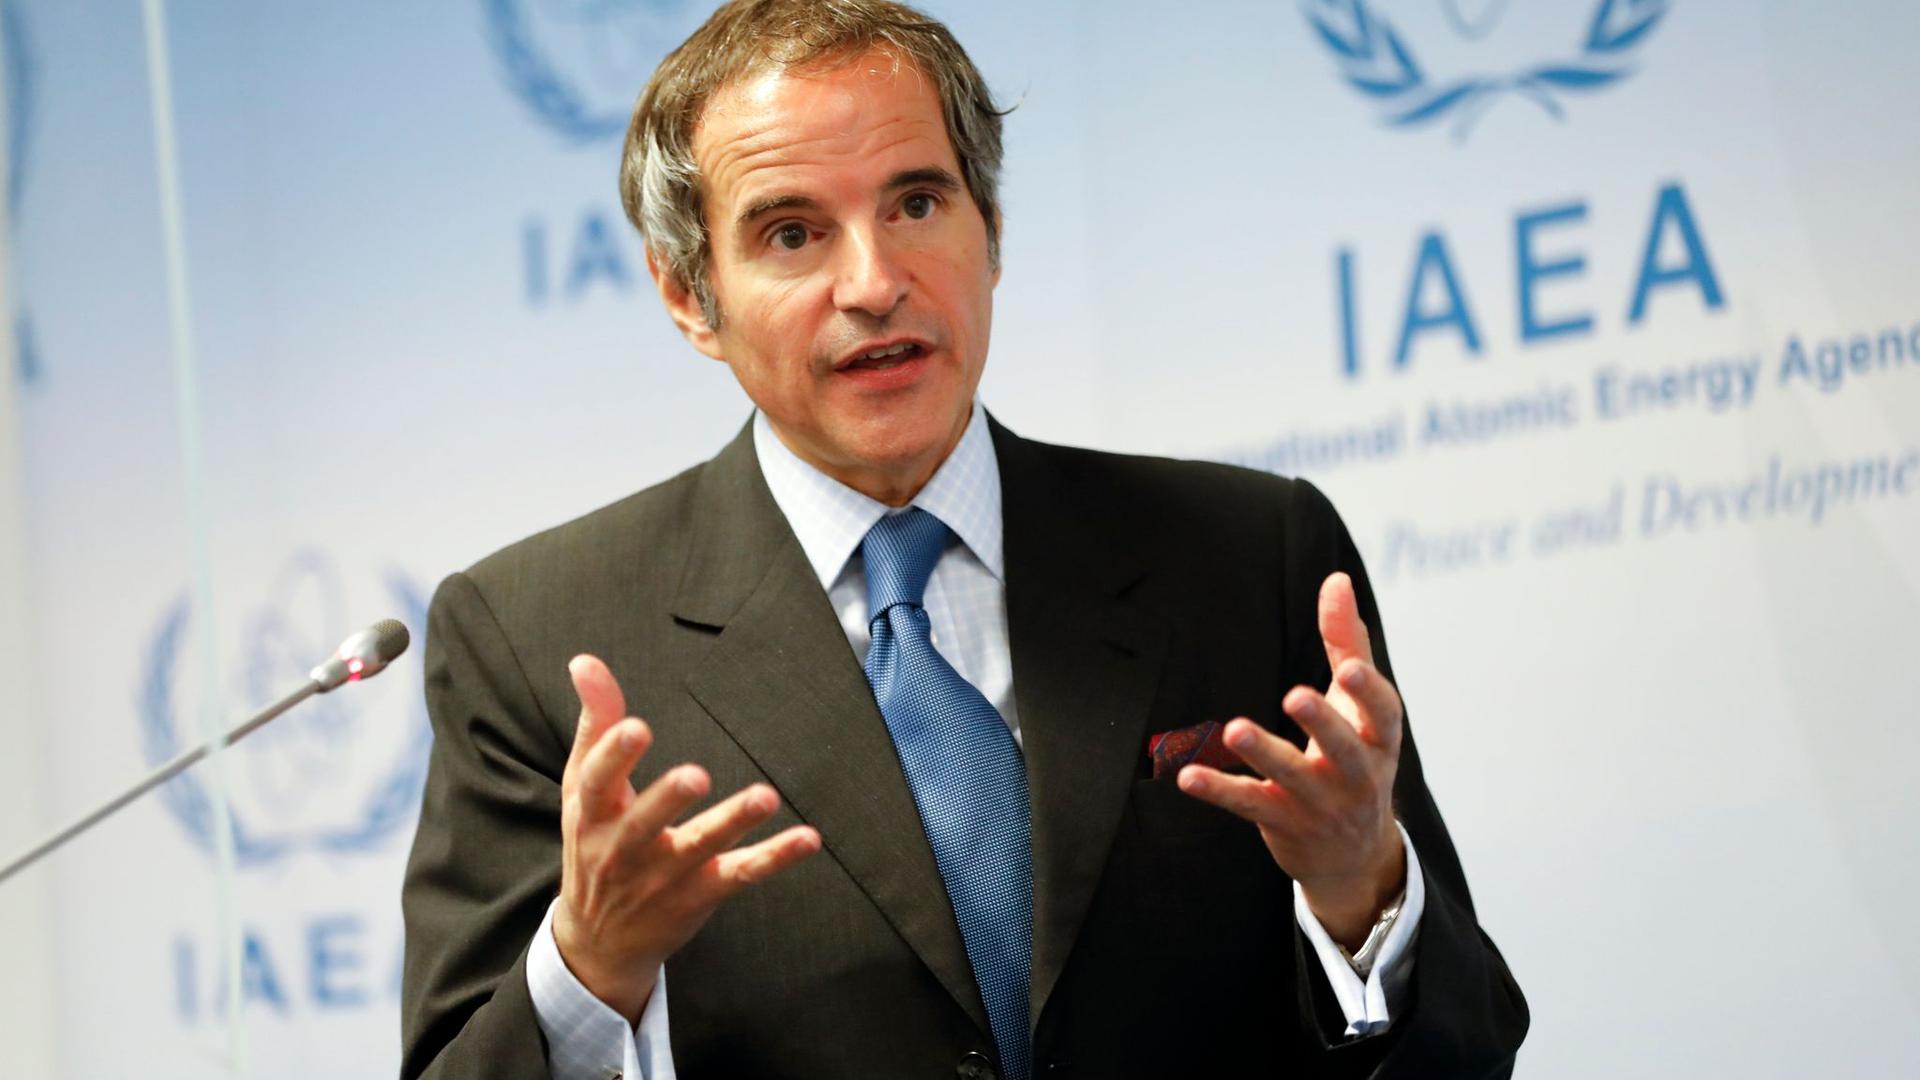 Rafael Mariano Grossi ist Generaldirektor der Internationalen Atomenergiebehörde IAEO.